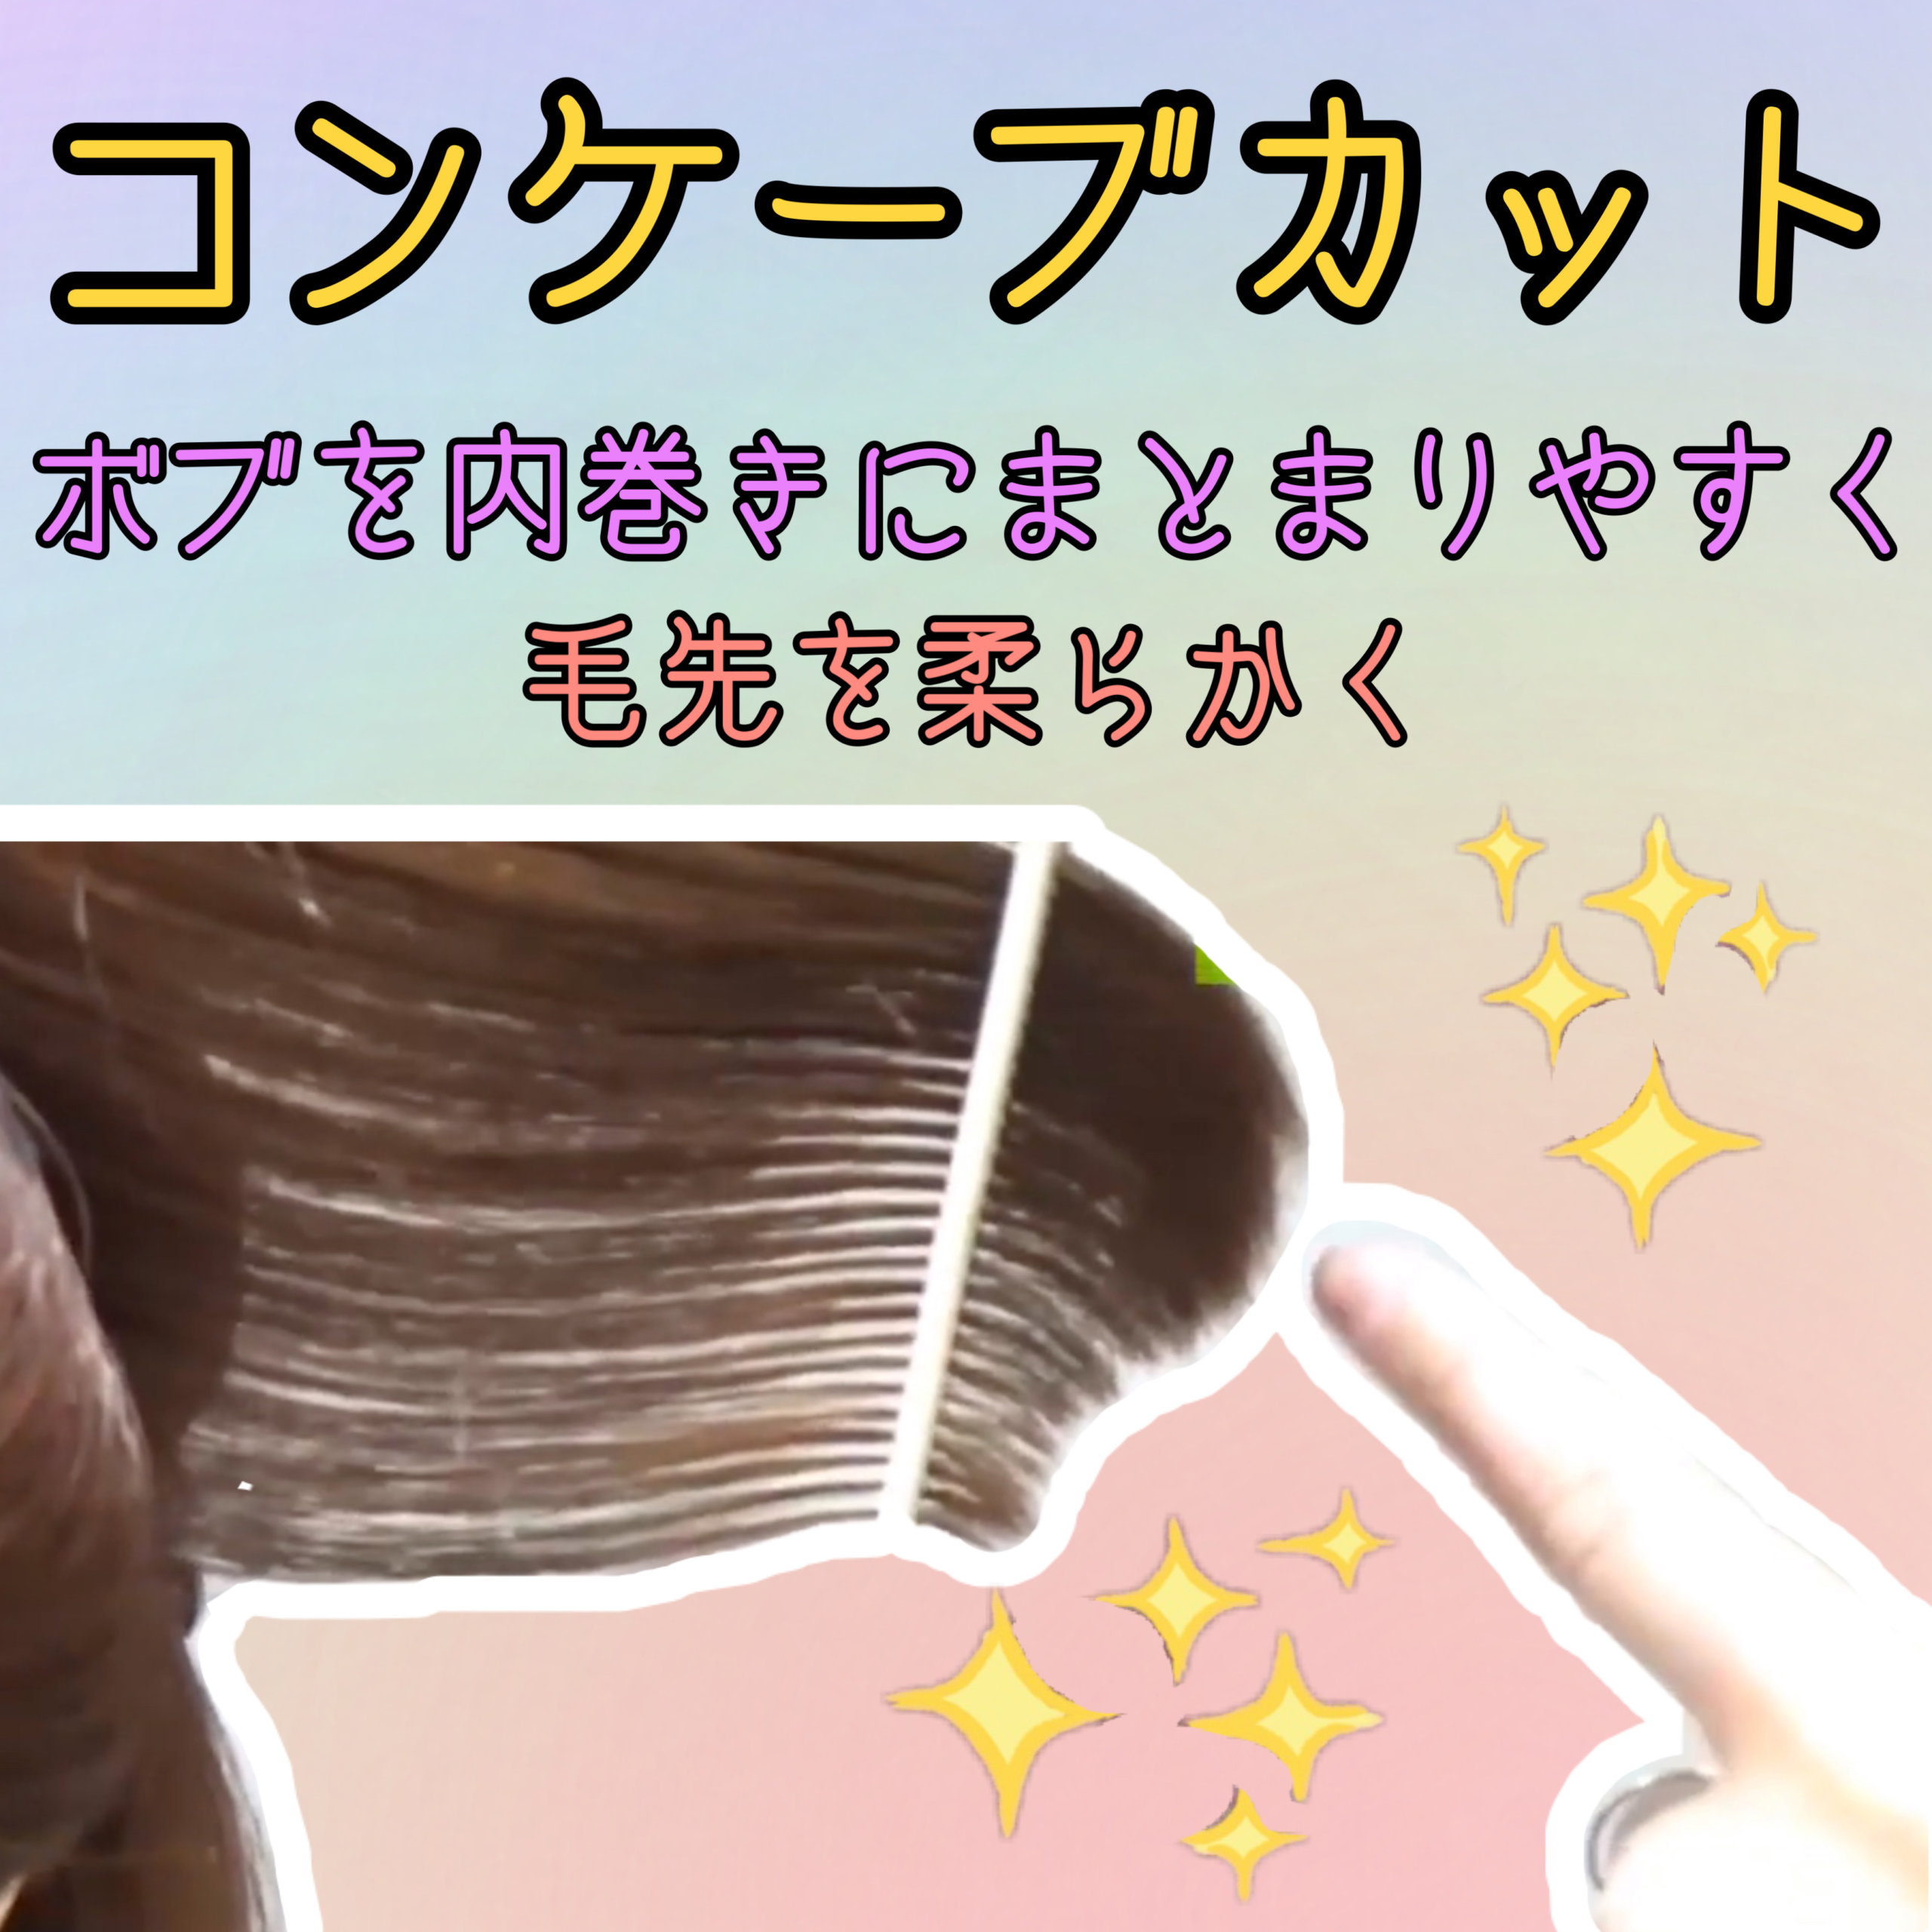 コンケーブカット 切り方 重めの髪型 ボブ グラボブ をチョップやセニングを使わないで軽く内巻きにする美容師カット動画 横浜 鶴ヶ峰 上手い 得意 美容室 ヘアサロン Enx